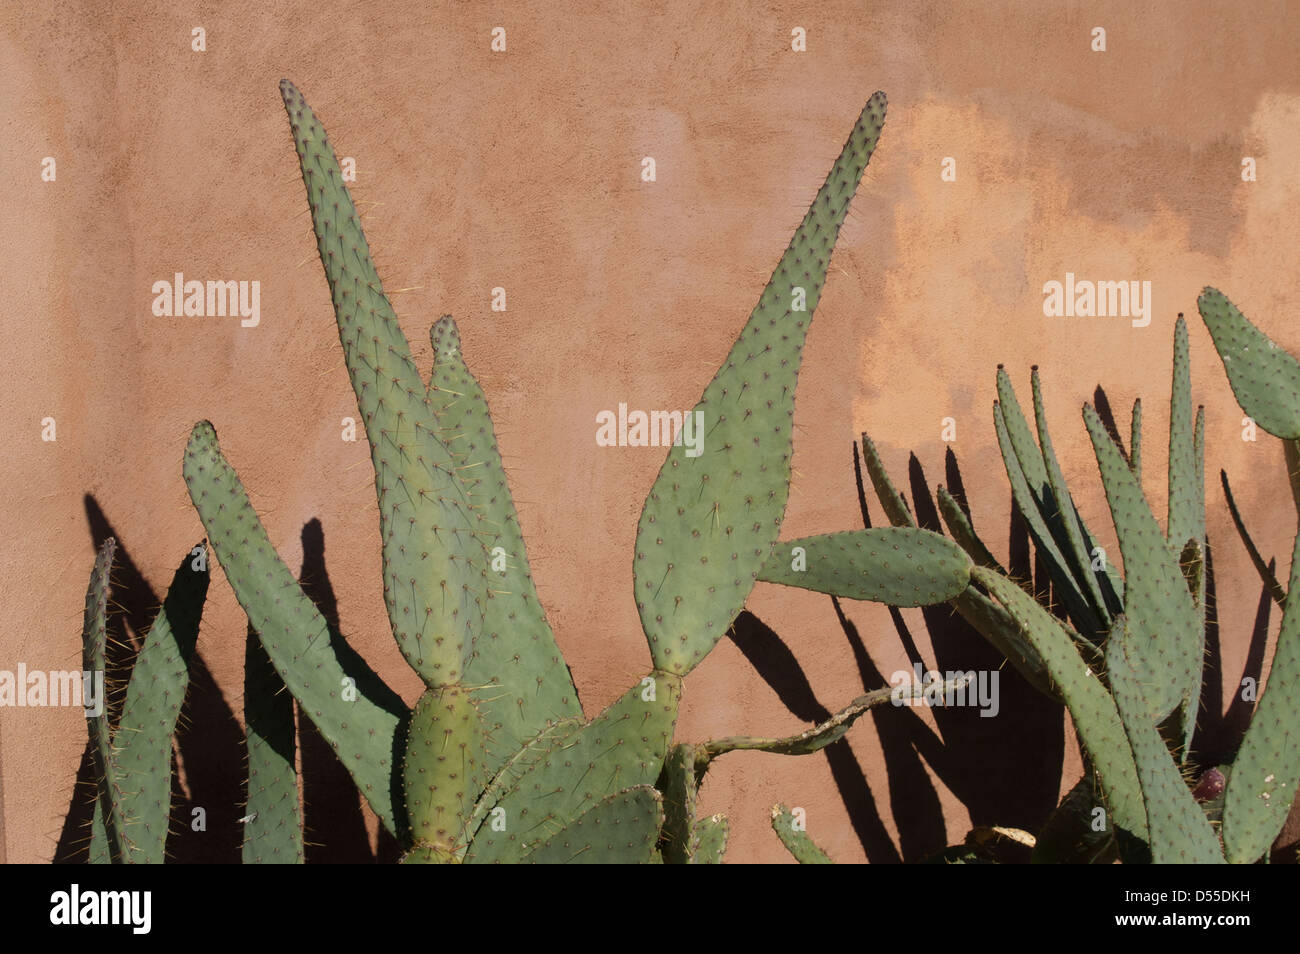 Un grande desert cactus gettando ombre contro un color salmone stucco parete - un sacco di copia dello spazio disponibile. Foto Stock